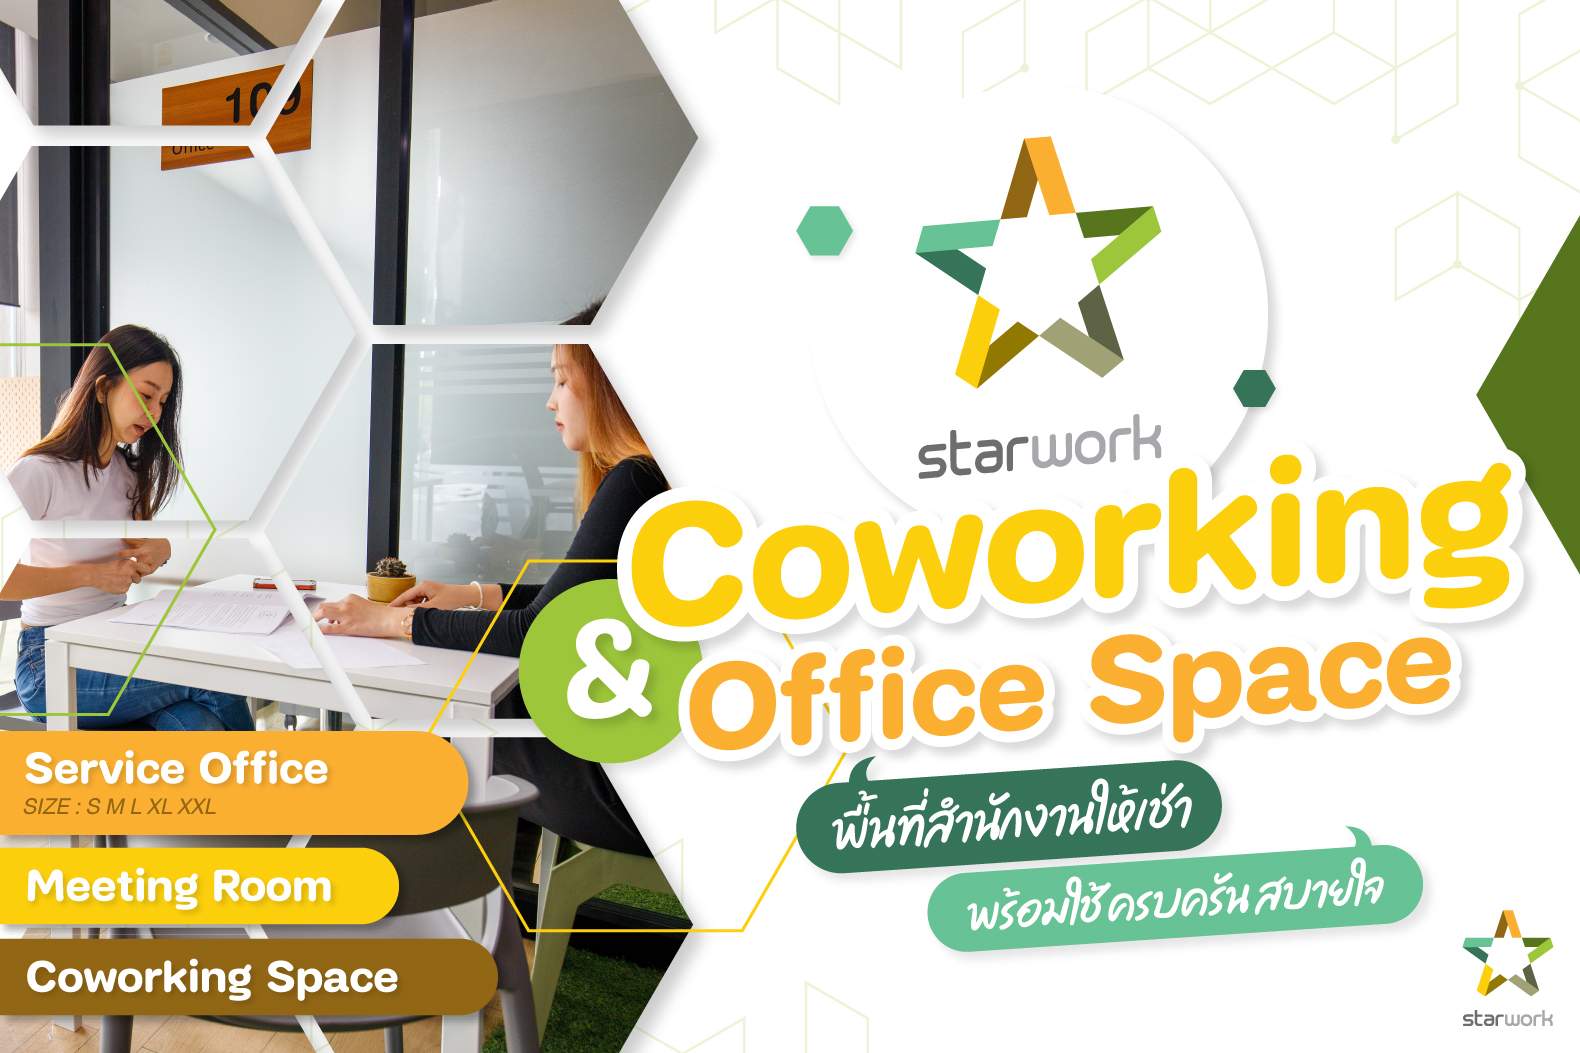 Starwork Coworking & Office space สำนักงานให้เช่าเชียงใหม่ รองรับได้ทุกขนาดธุรกิจ